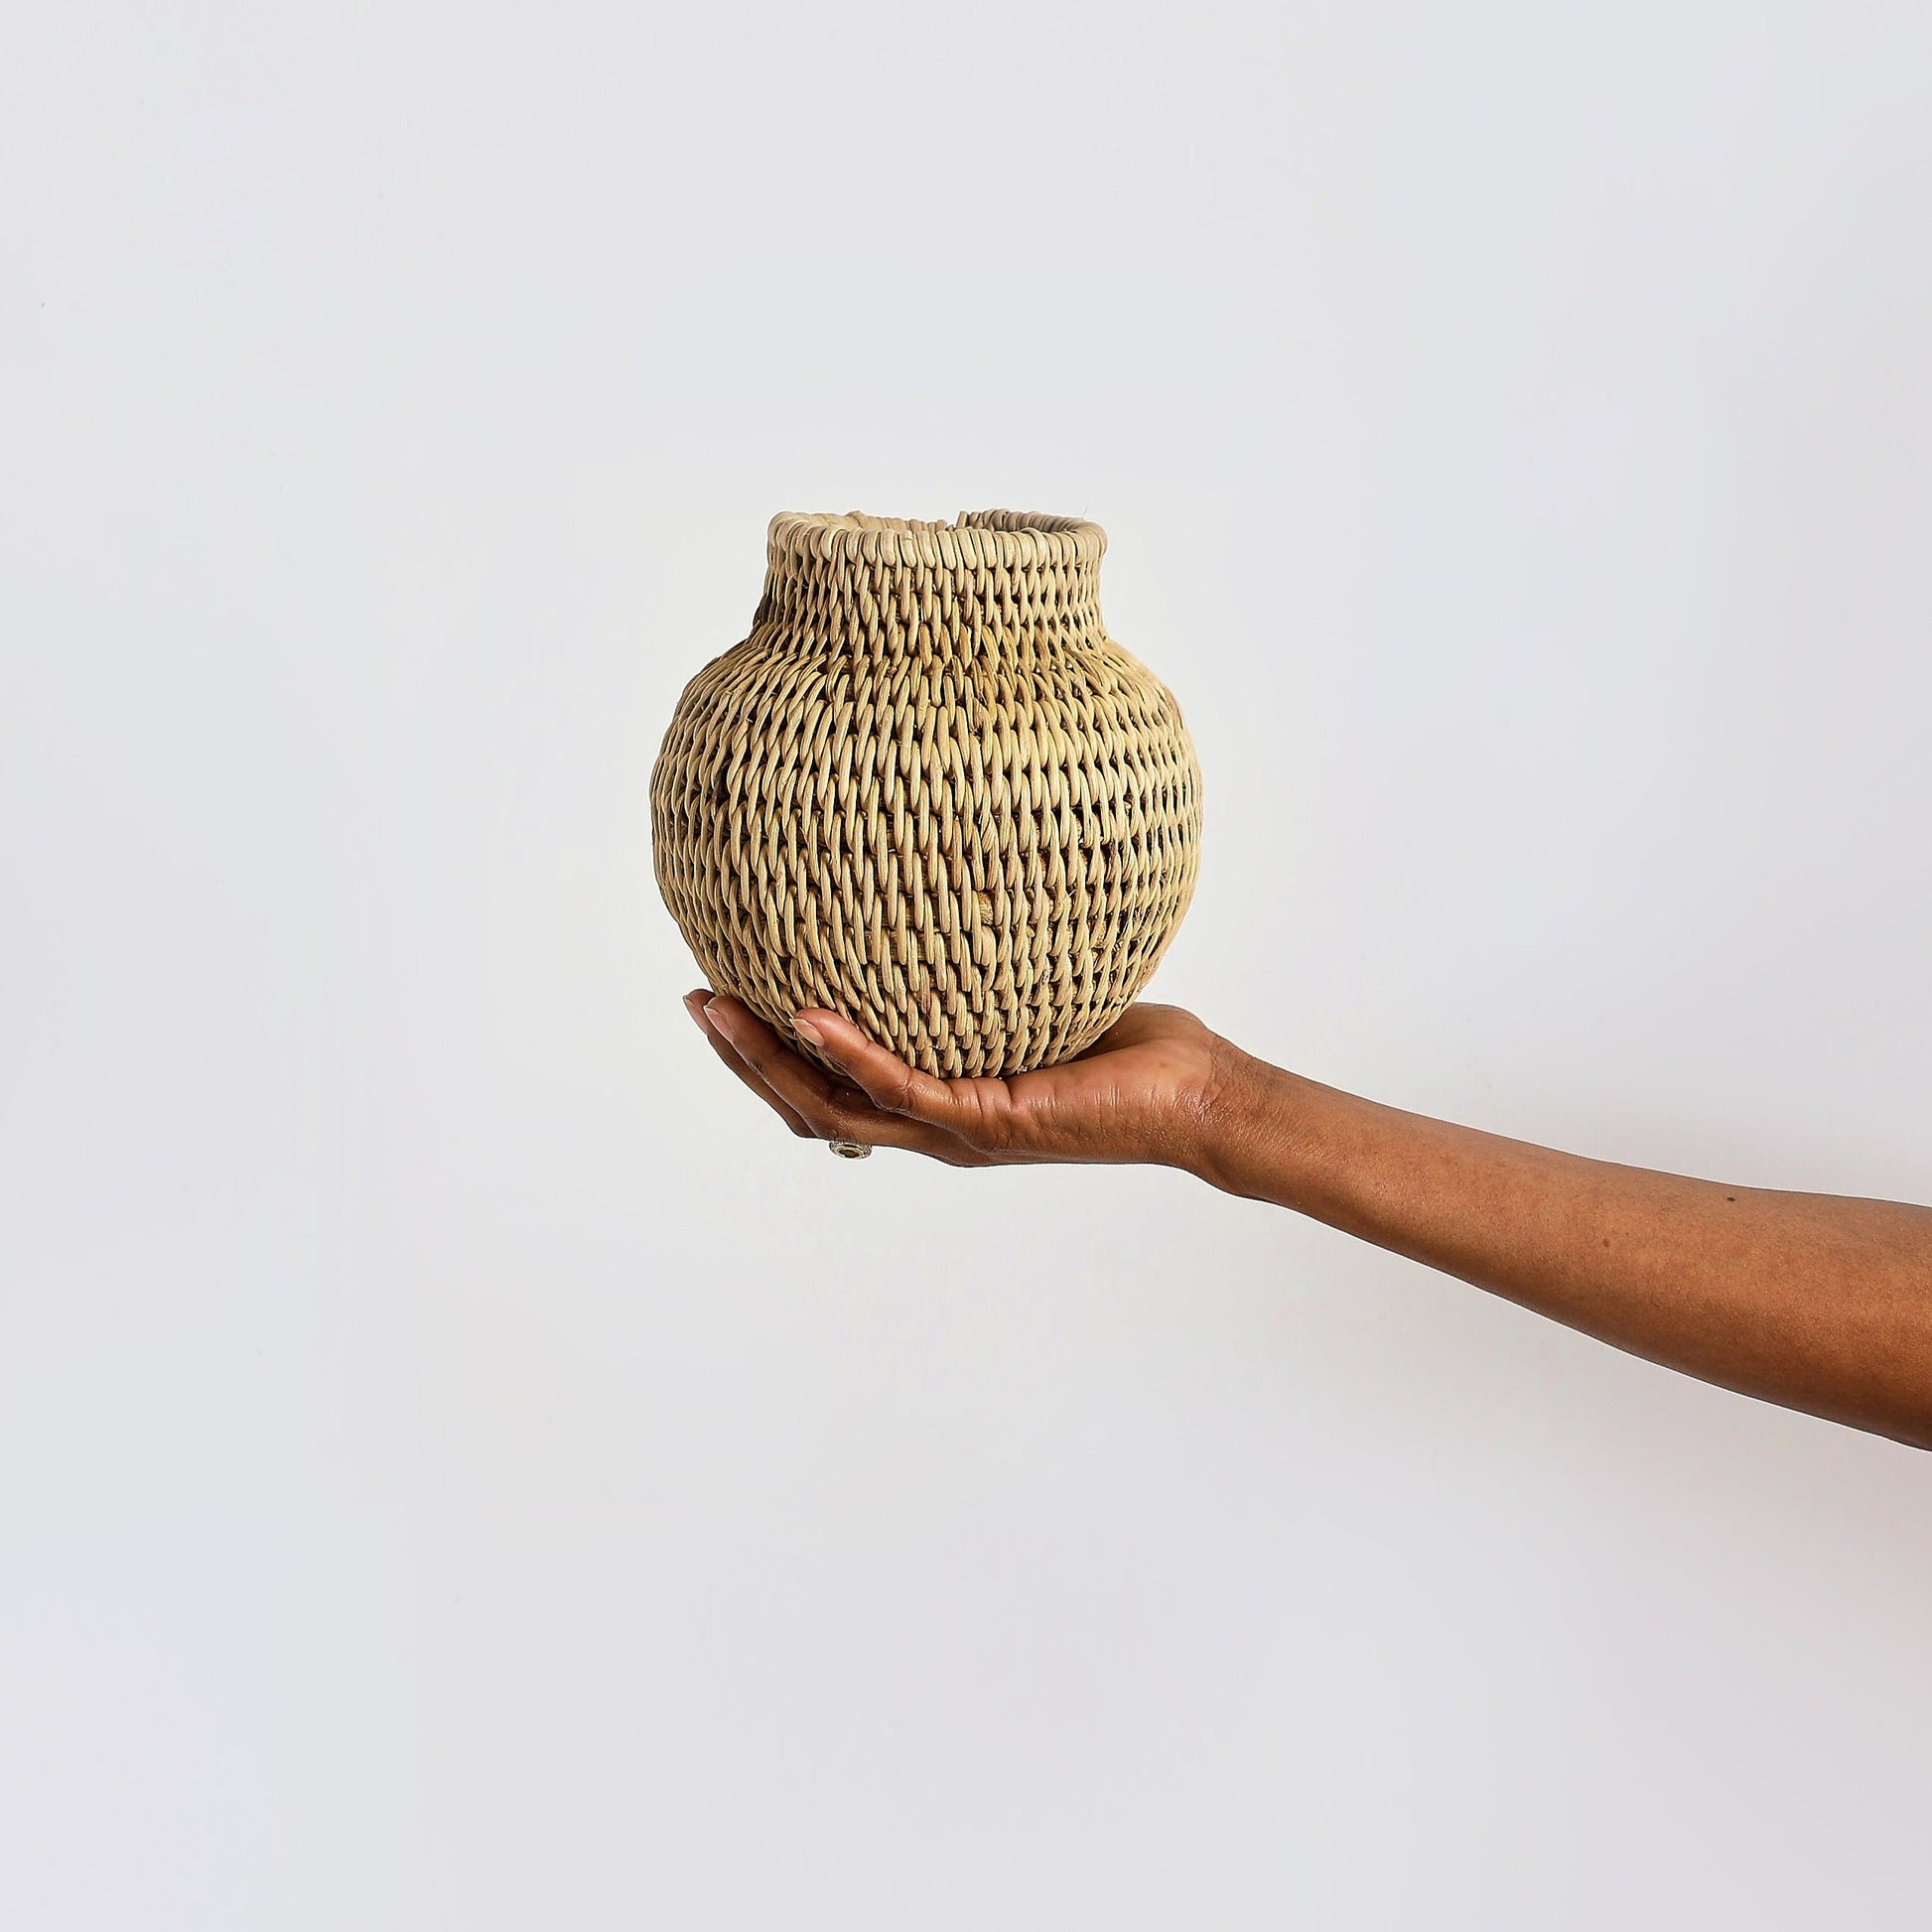 Buhera Woven Basket  Small